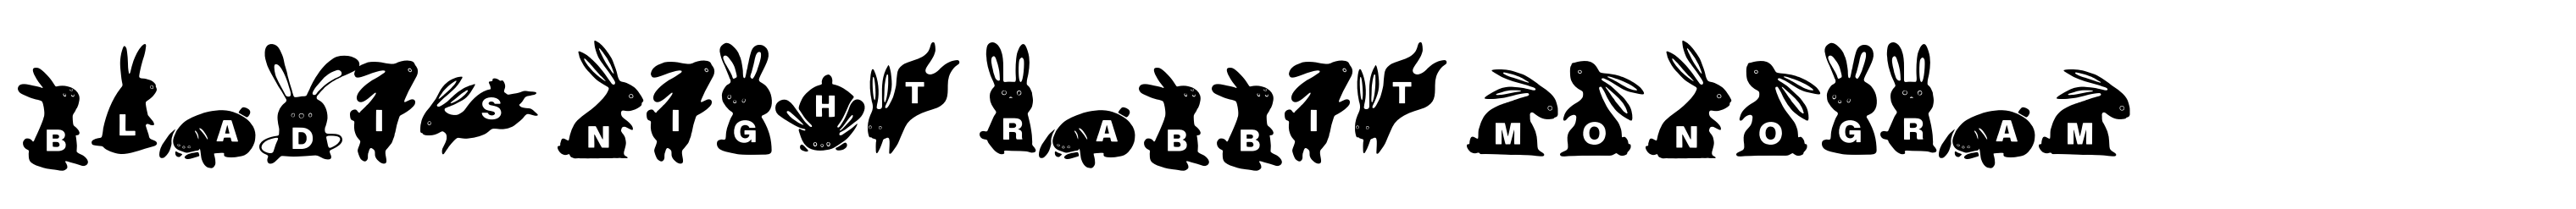 Bladis Night Rabbit Monogram